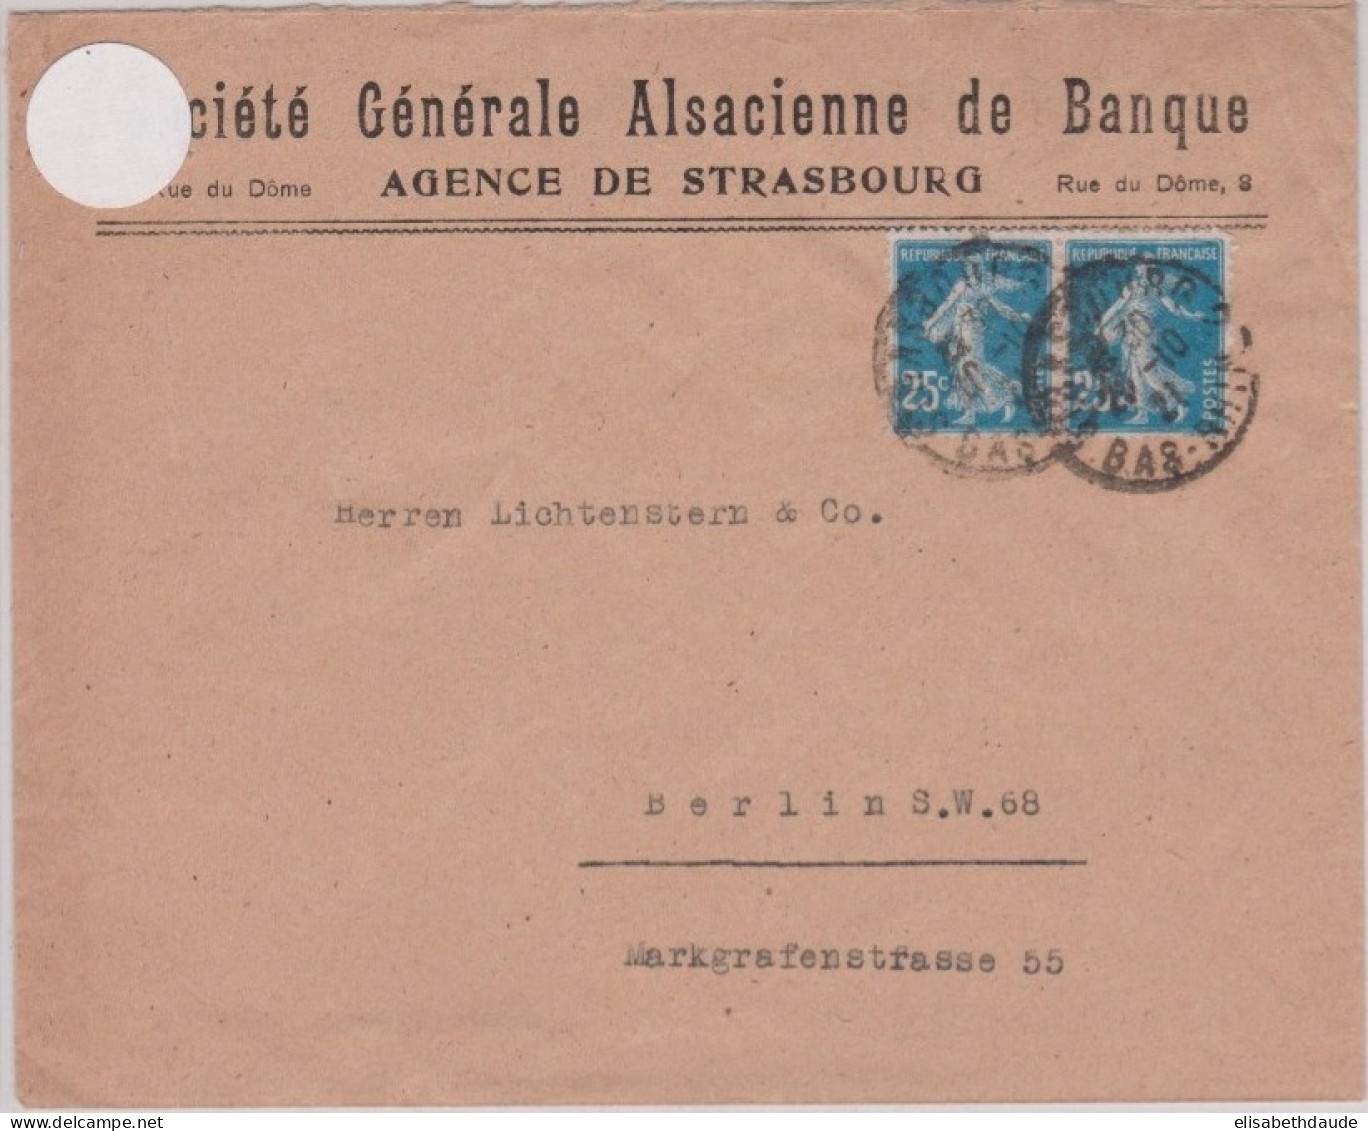 1921 - ENVELOPPE COMMERCIALE ( SOCIETE GENERALE ALSACIENNE DE BANQUE ) De STRASBOURG ( BAS-RHIN ) - 1906-38 Säerin, Untergrund Glatt